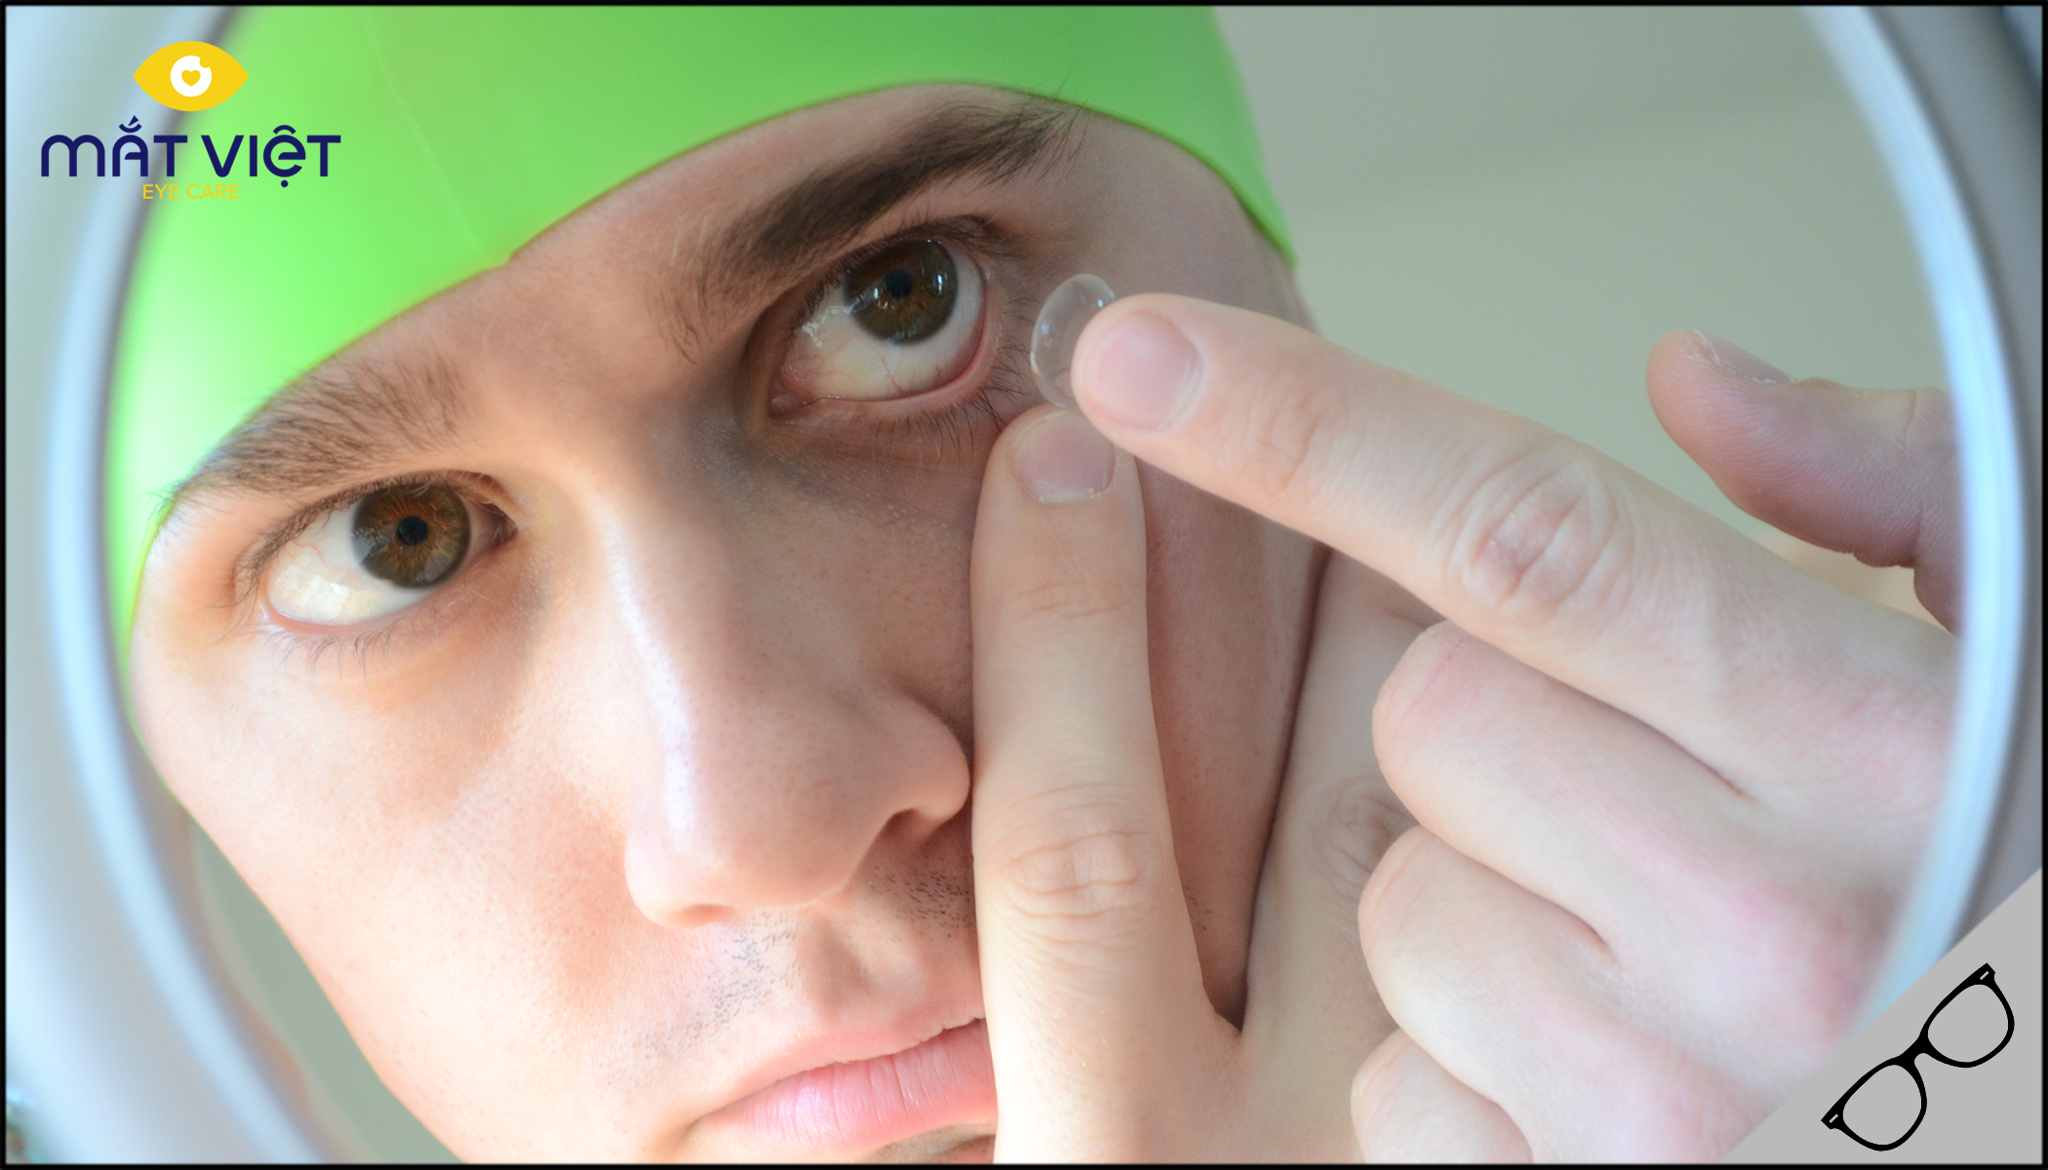 Cách đeo lens mắt khi bơi